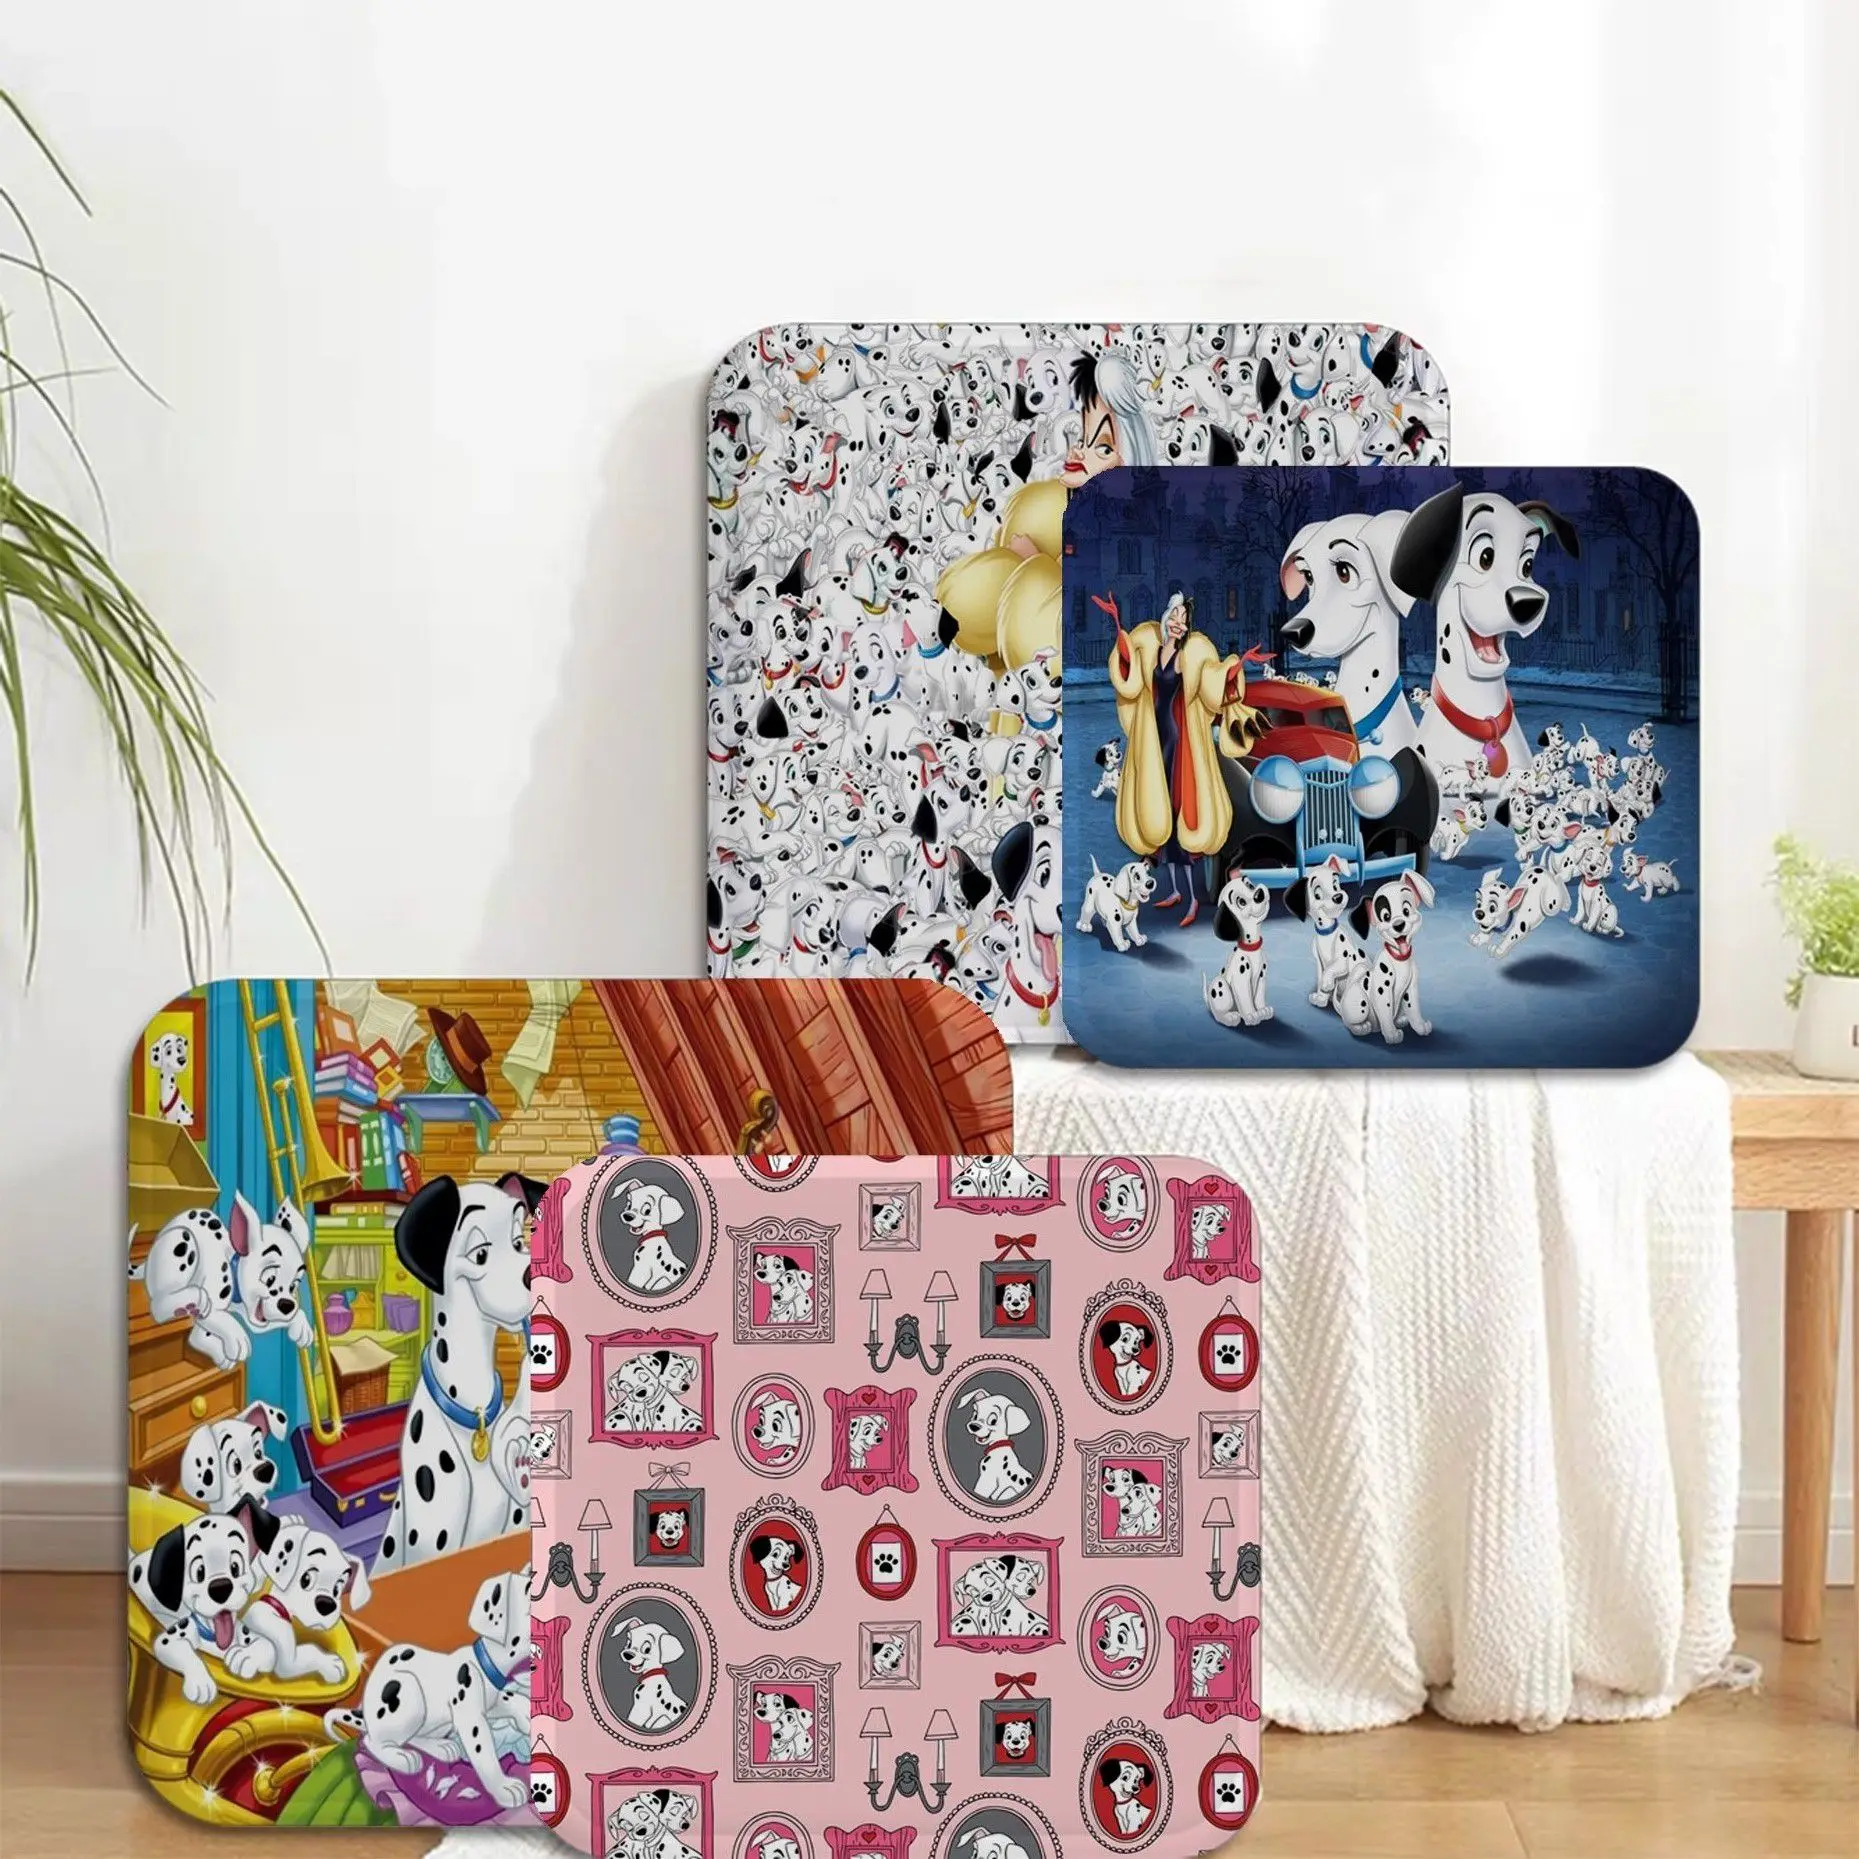 

Disney 101 Dalmatians Cruella De Vil Cartoon Tie Rope Plush Cushion Home Back Cushion Soft Comfortable 50x50cm Cushion Pads